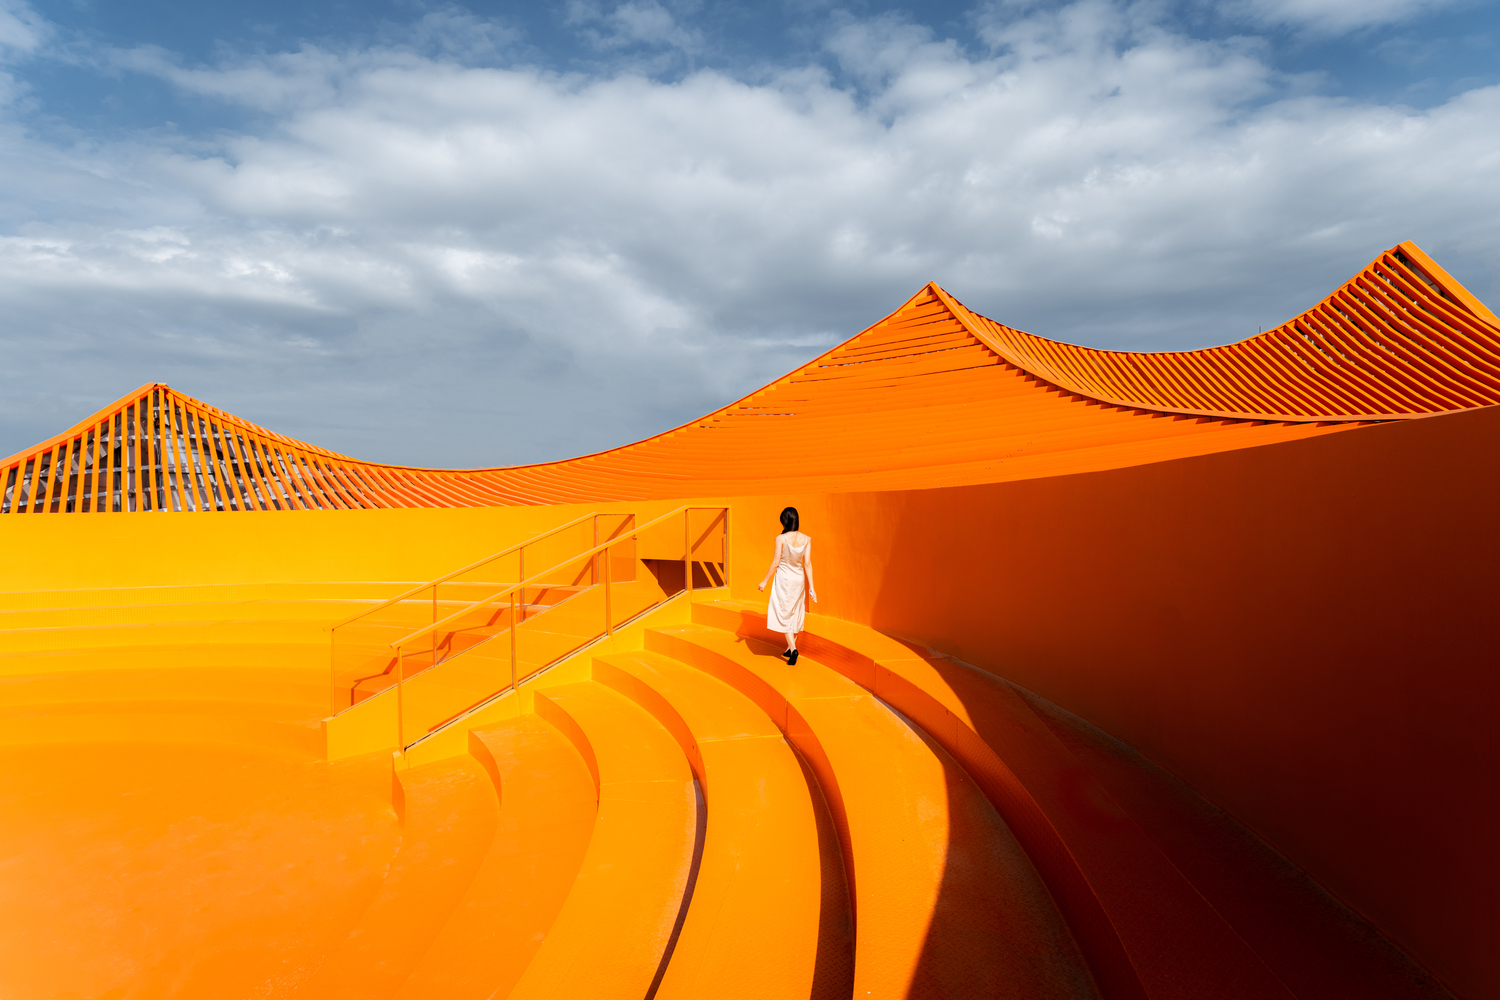 色彩鲜艳的橘红色屋顶上，特别设计有一座弧形露天剧场。